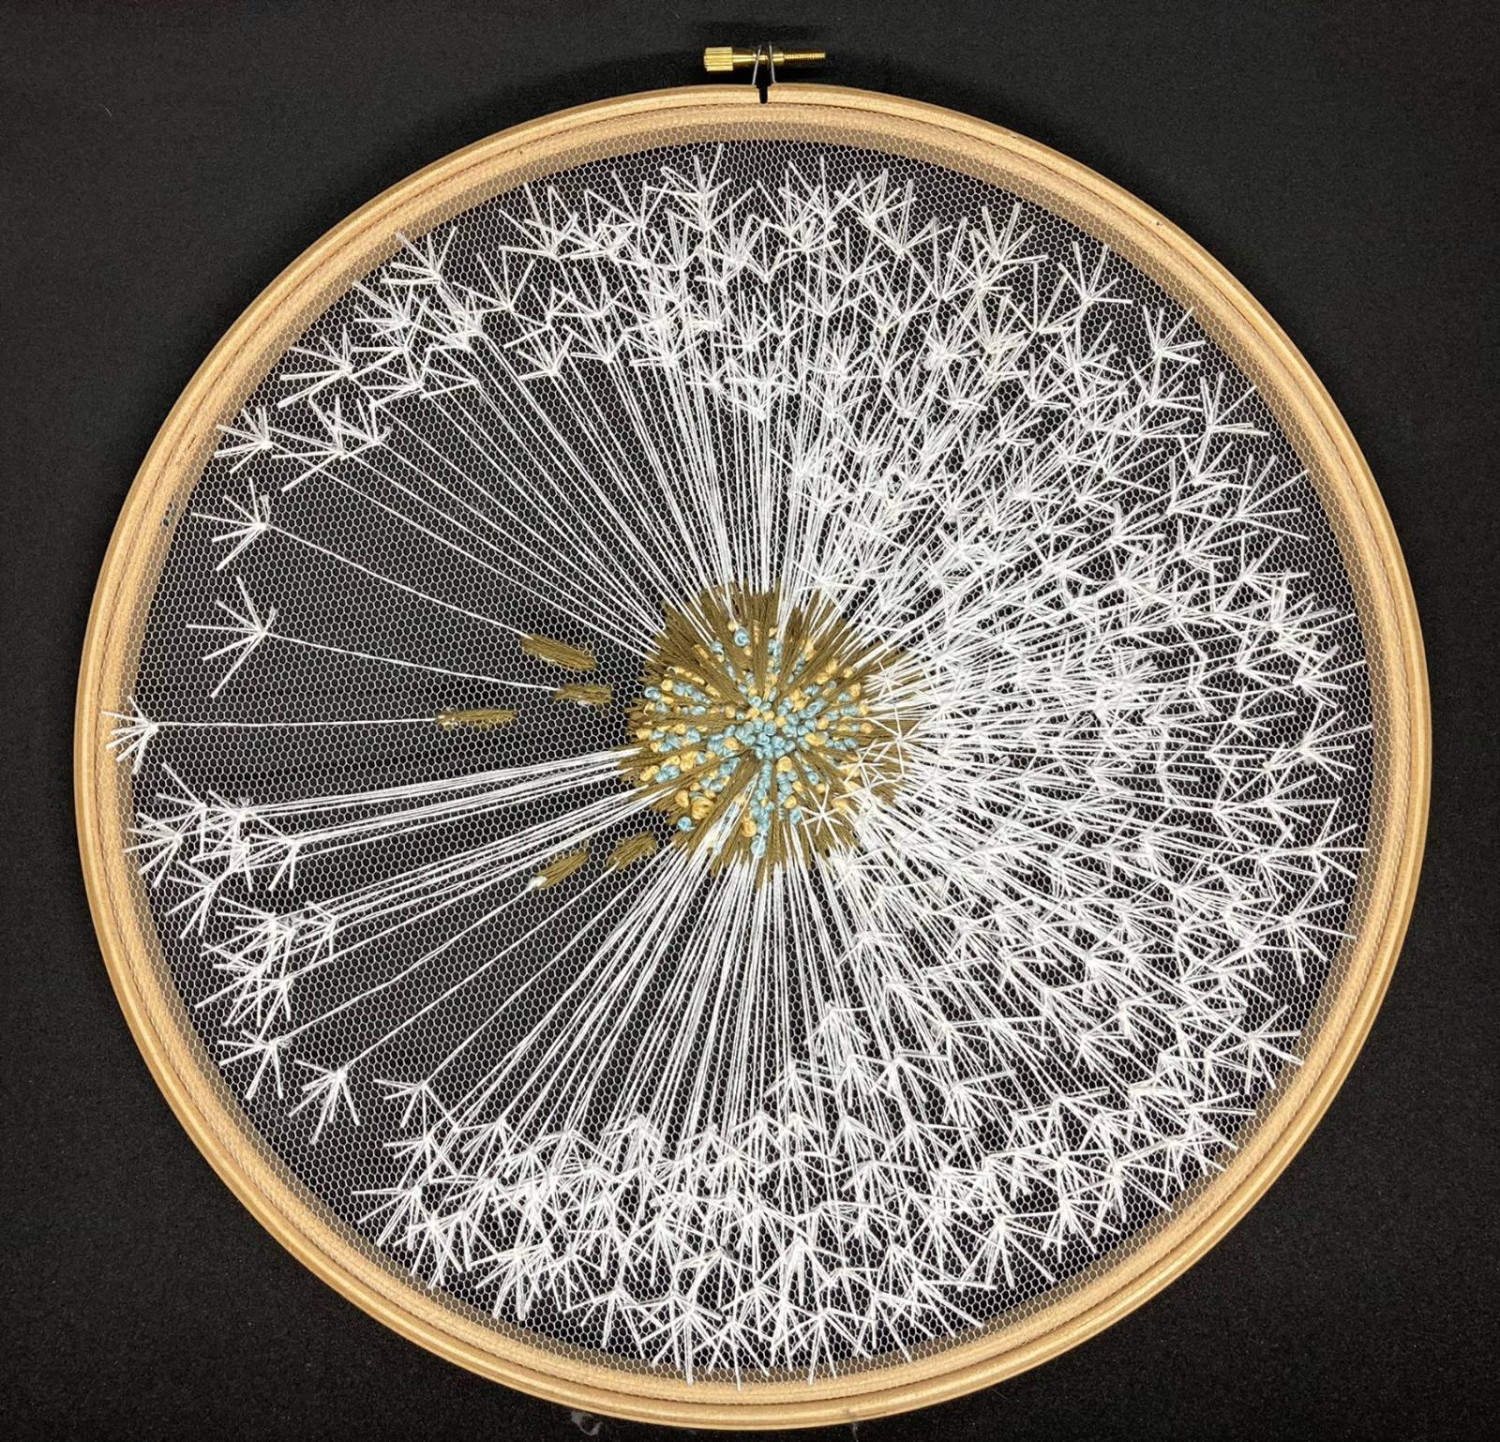 *Dandelion Clock*, embroidery on tulle in wooden hoop, 30.5cm wide hoop